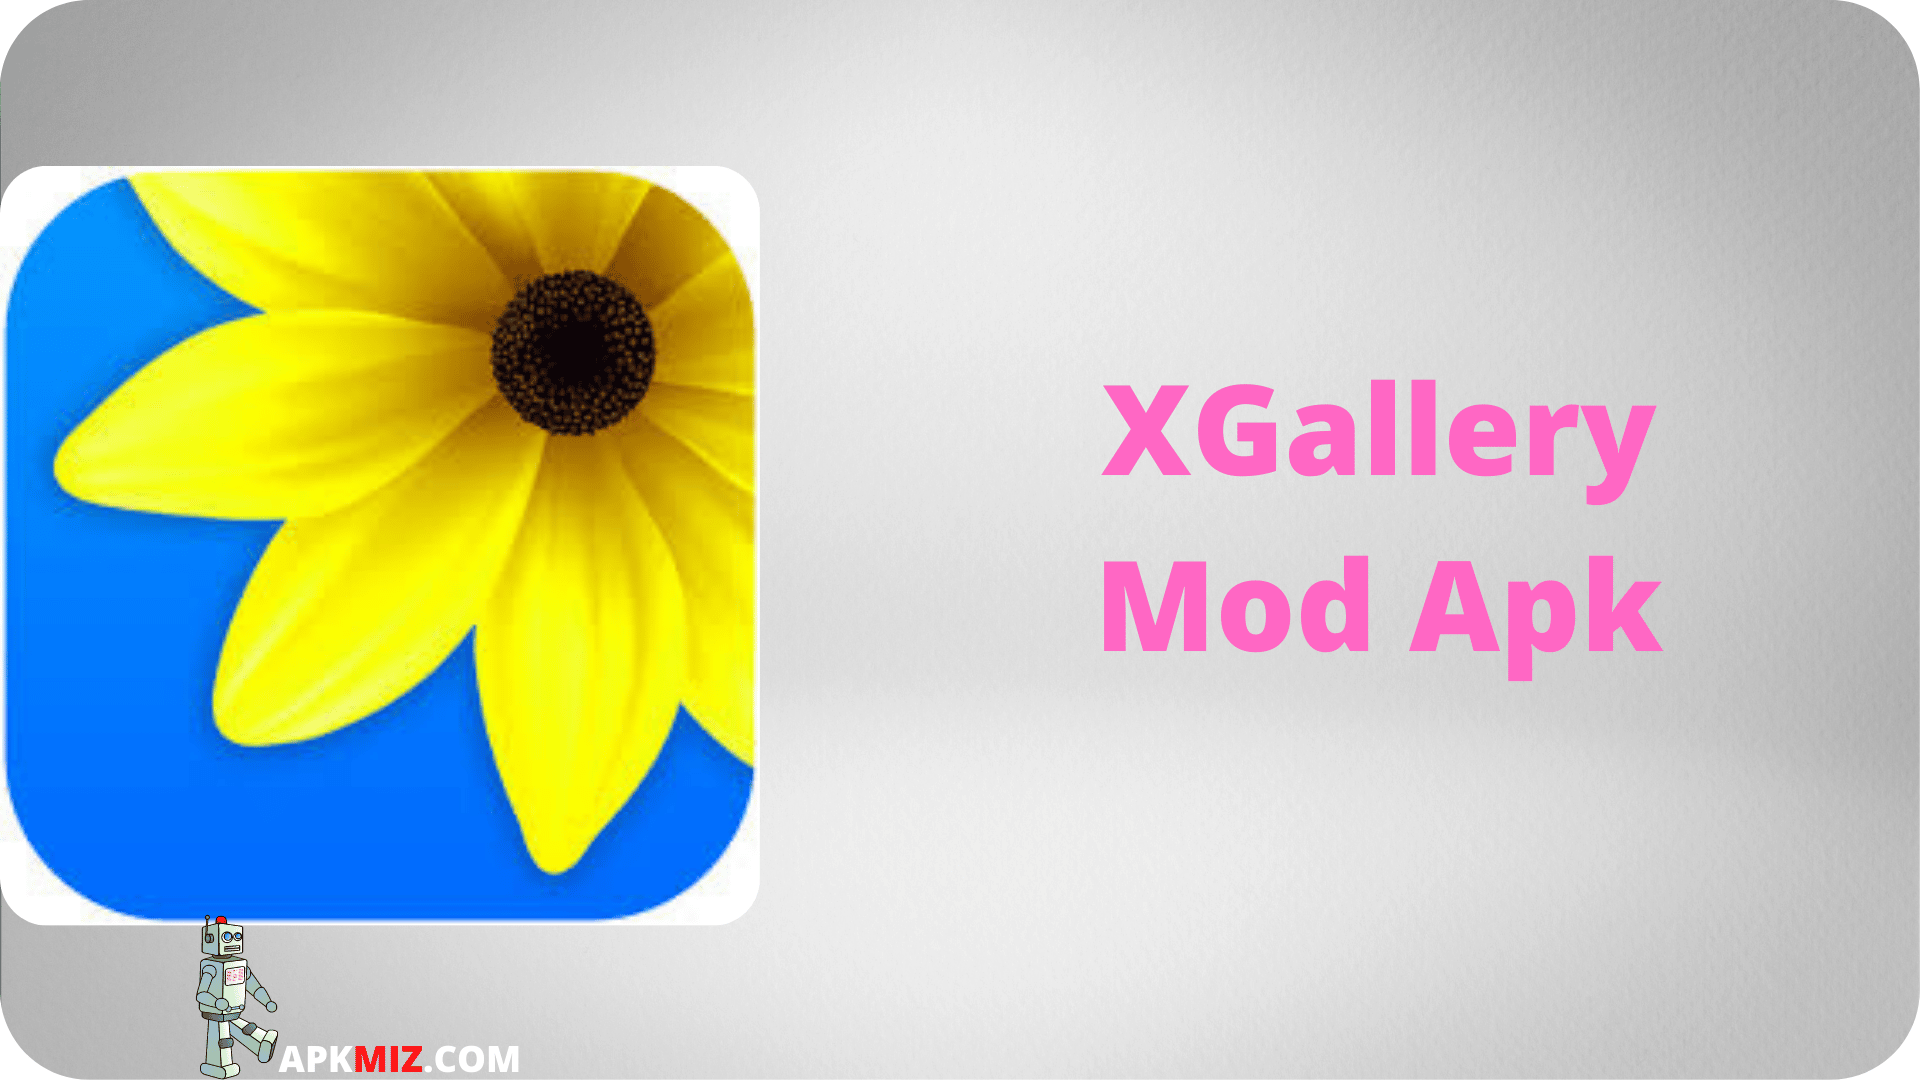 XGallery Mod Apk